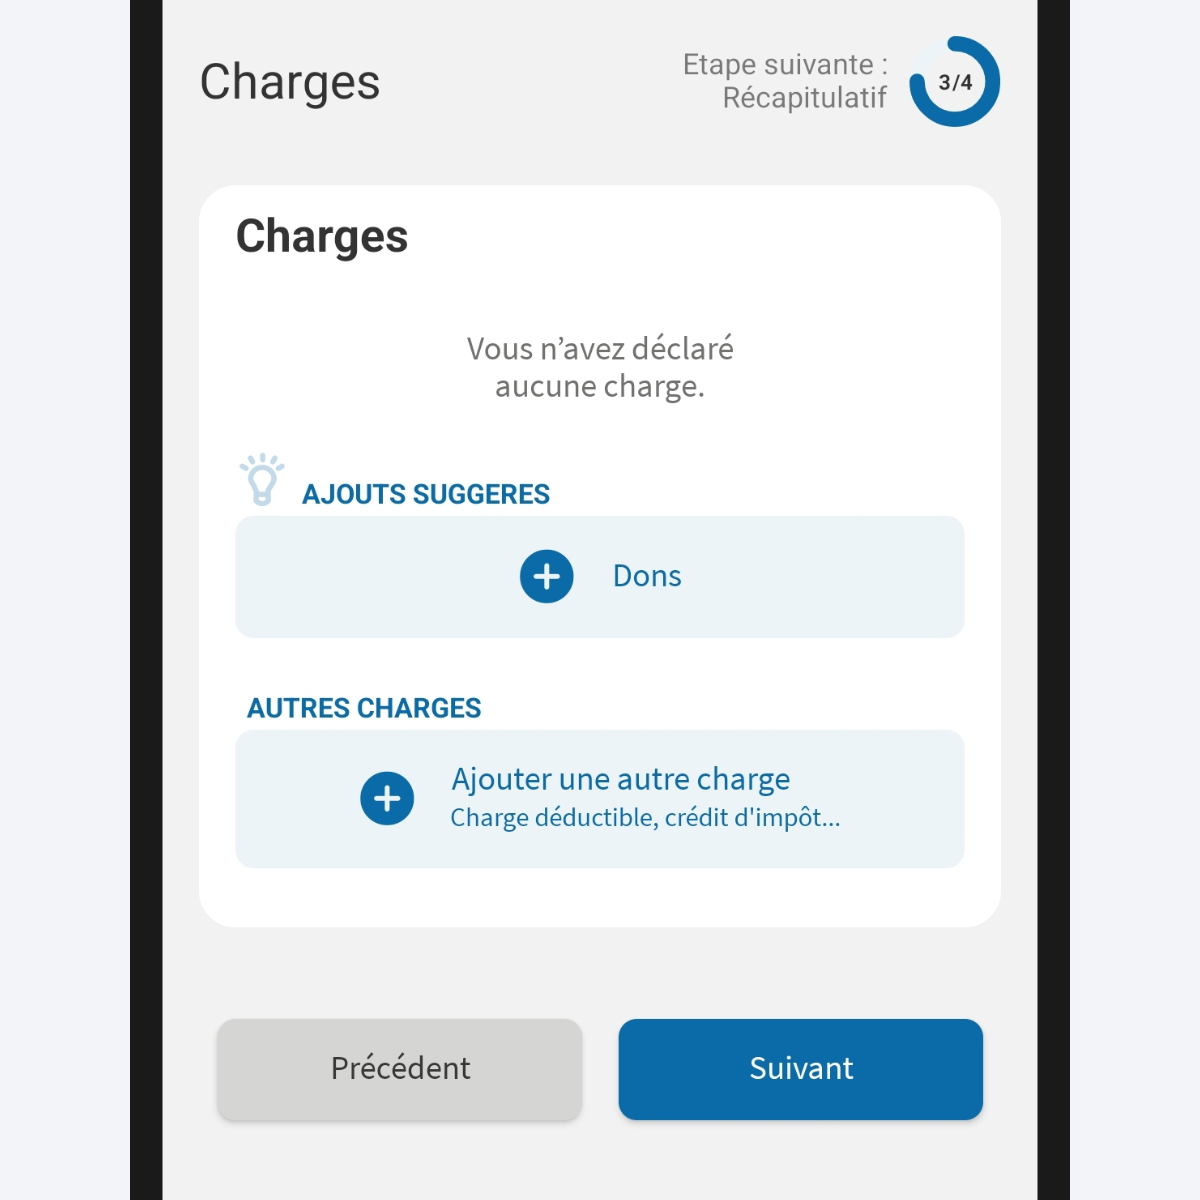 Capture d’écran partielle de l’application présentant
                    la page « Charges » du service « Déclarer mes revenus ». Les boutons permettant d'ajouter des charges sont affichés